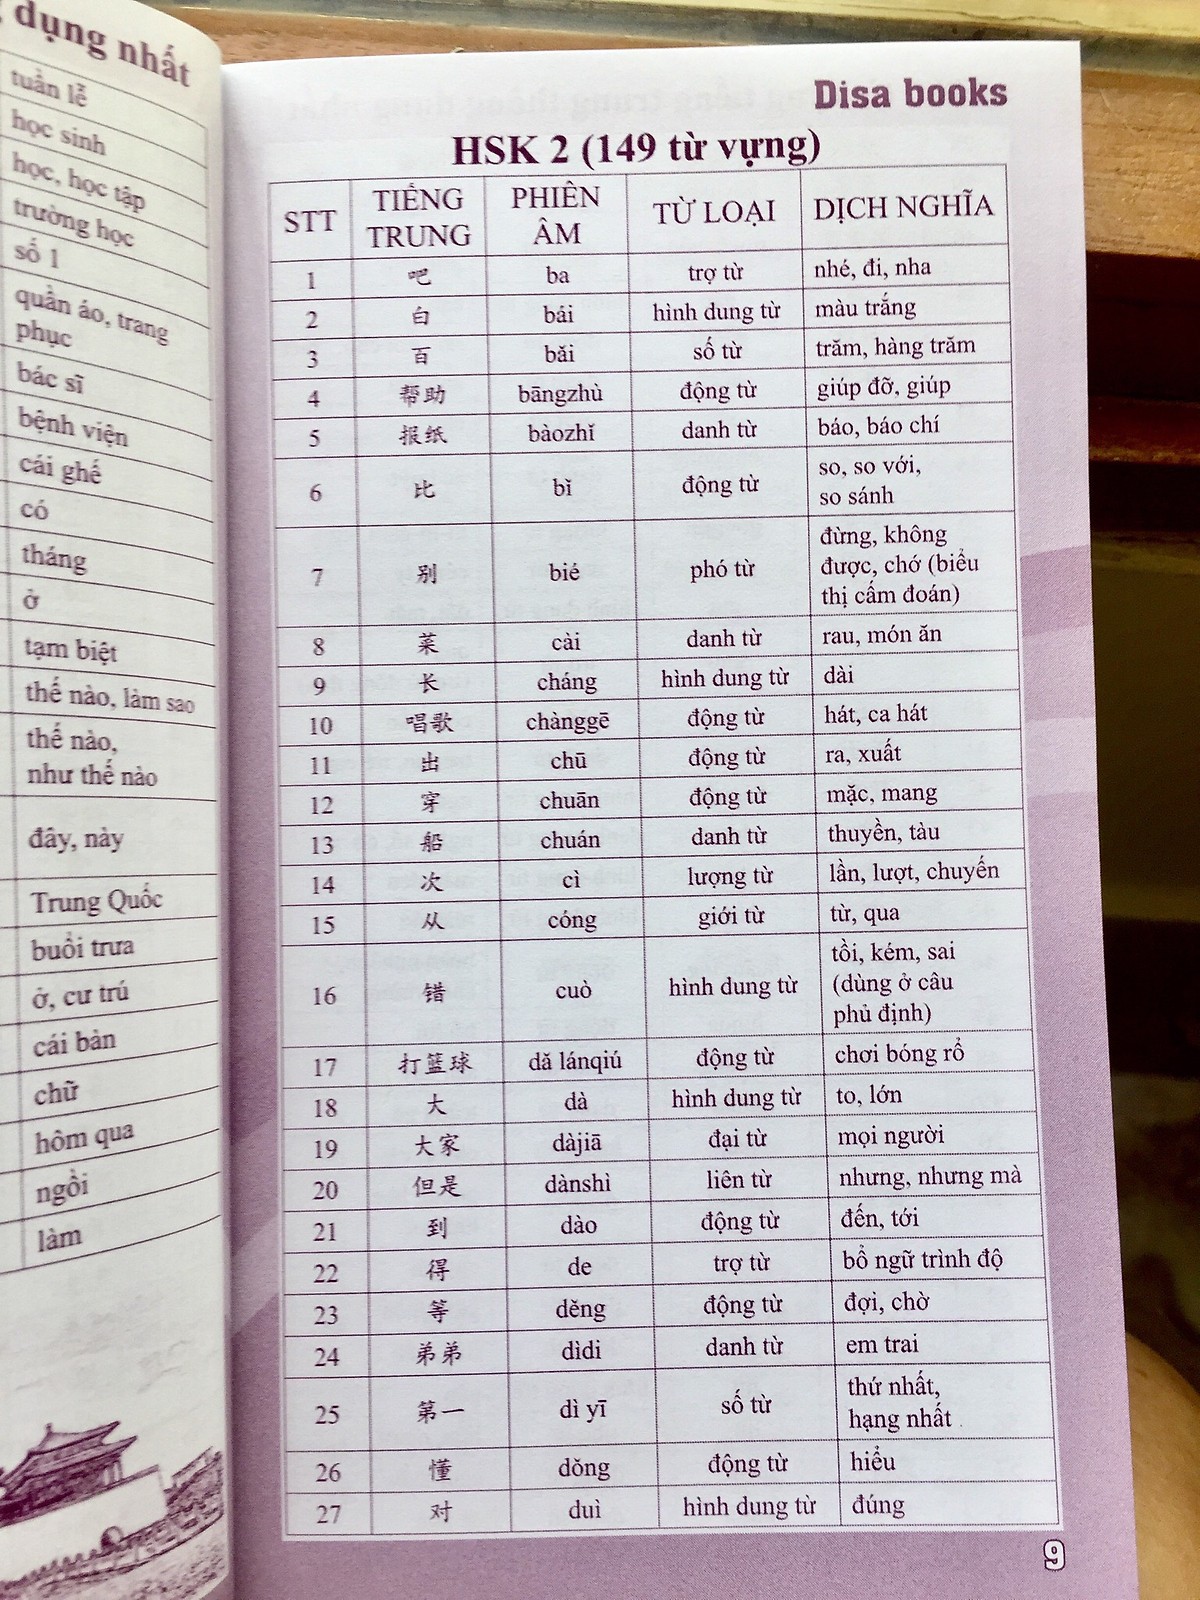 Combo 4 sách: Siêu trí nhớ chữ Hán tập 01 + tập 02 + tập 03 + 5000 từ vựng tiếng Trung thông dụng nhất và DVD tài liệu nghe